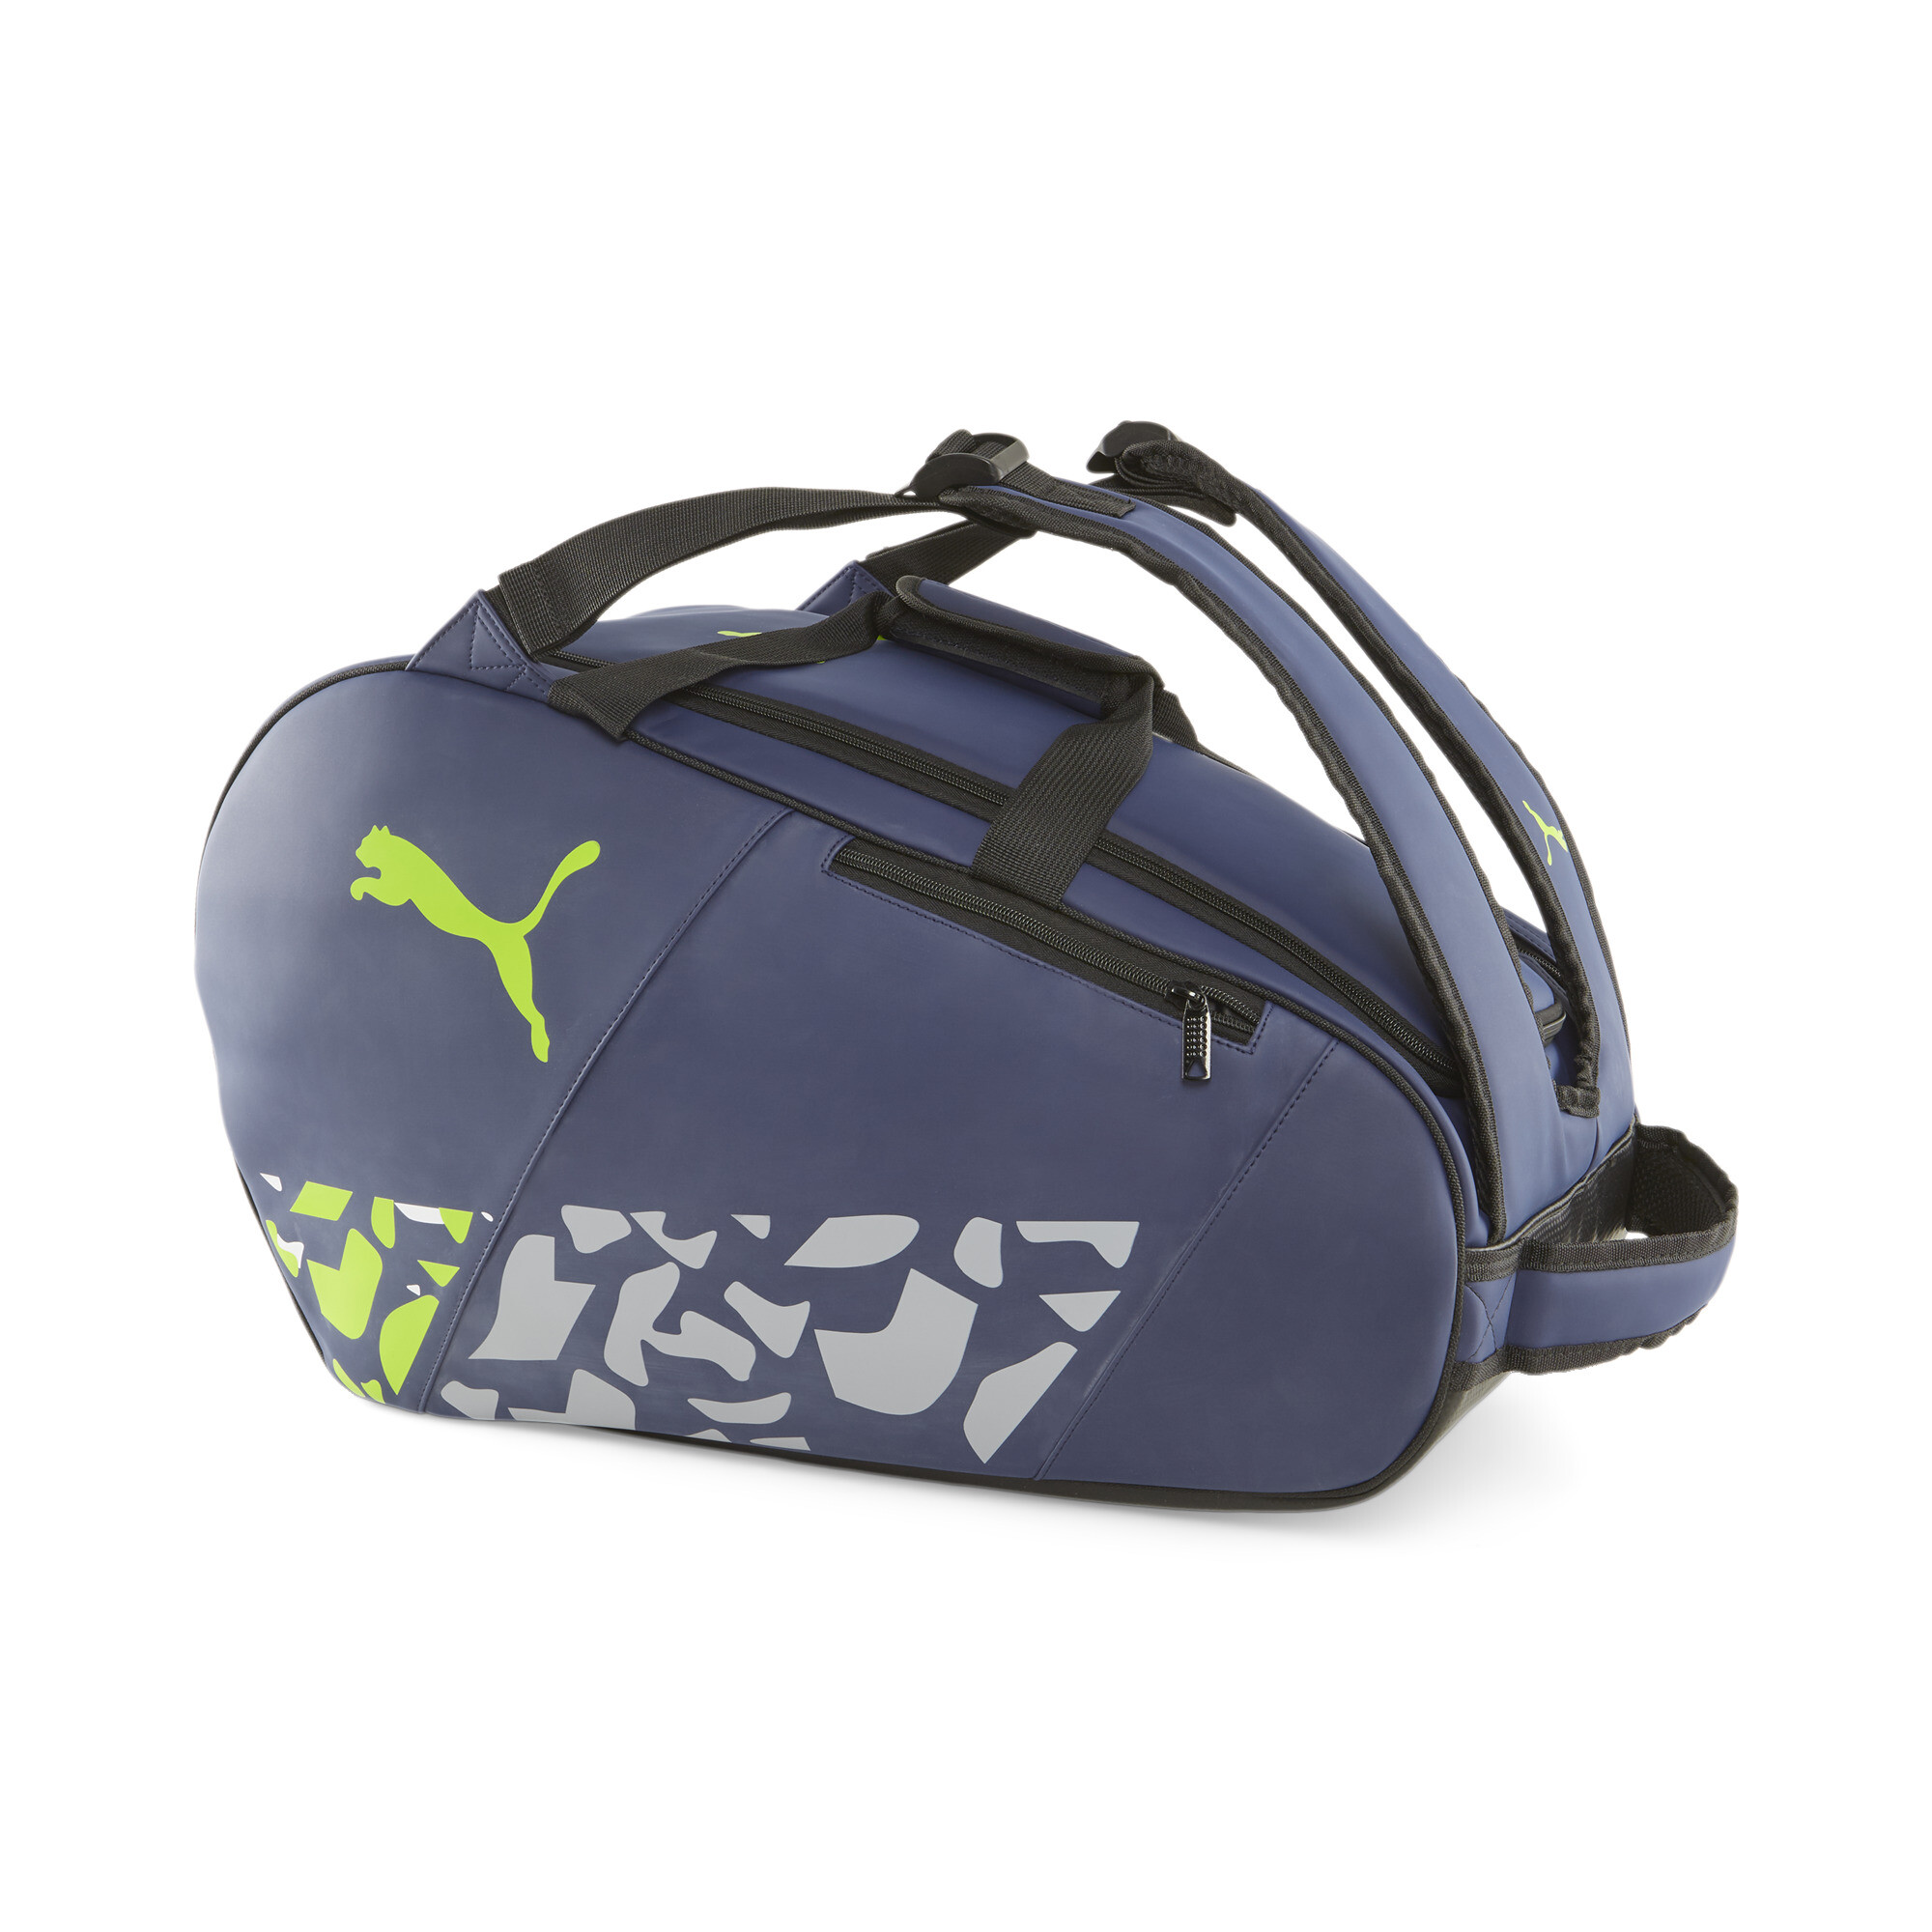 Puma Solar ATTACK Padel Tennis Bag, Blue, Accessories